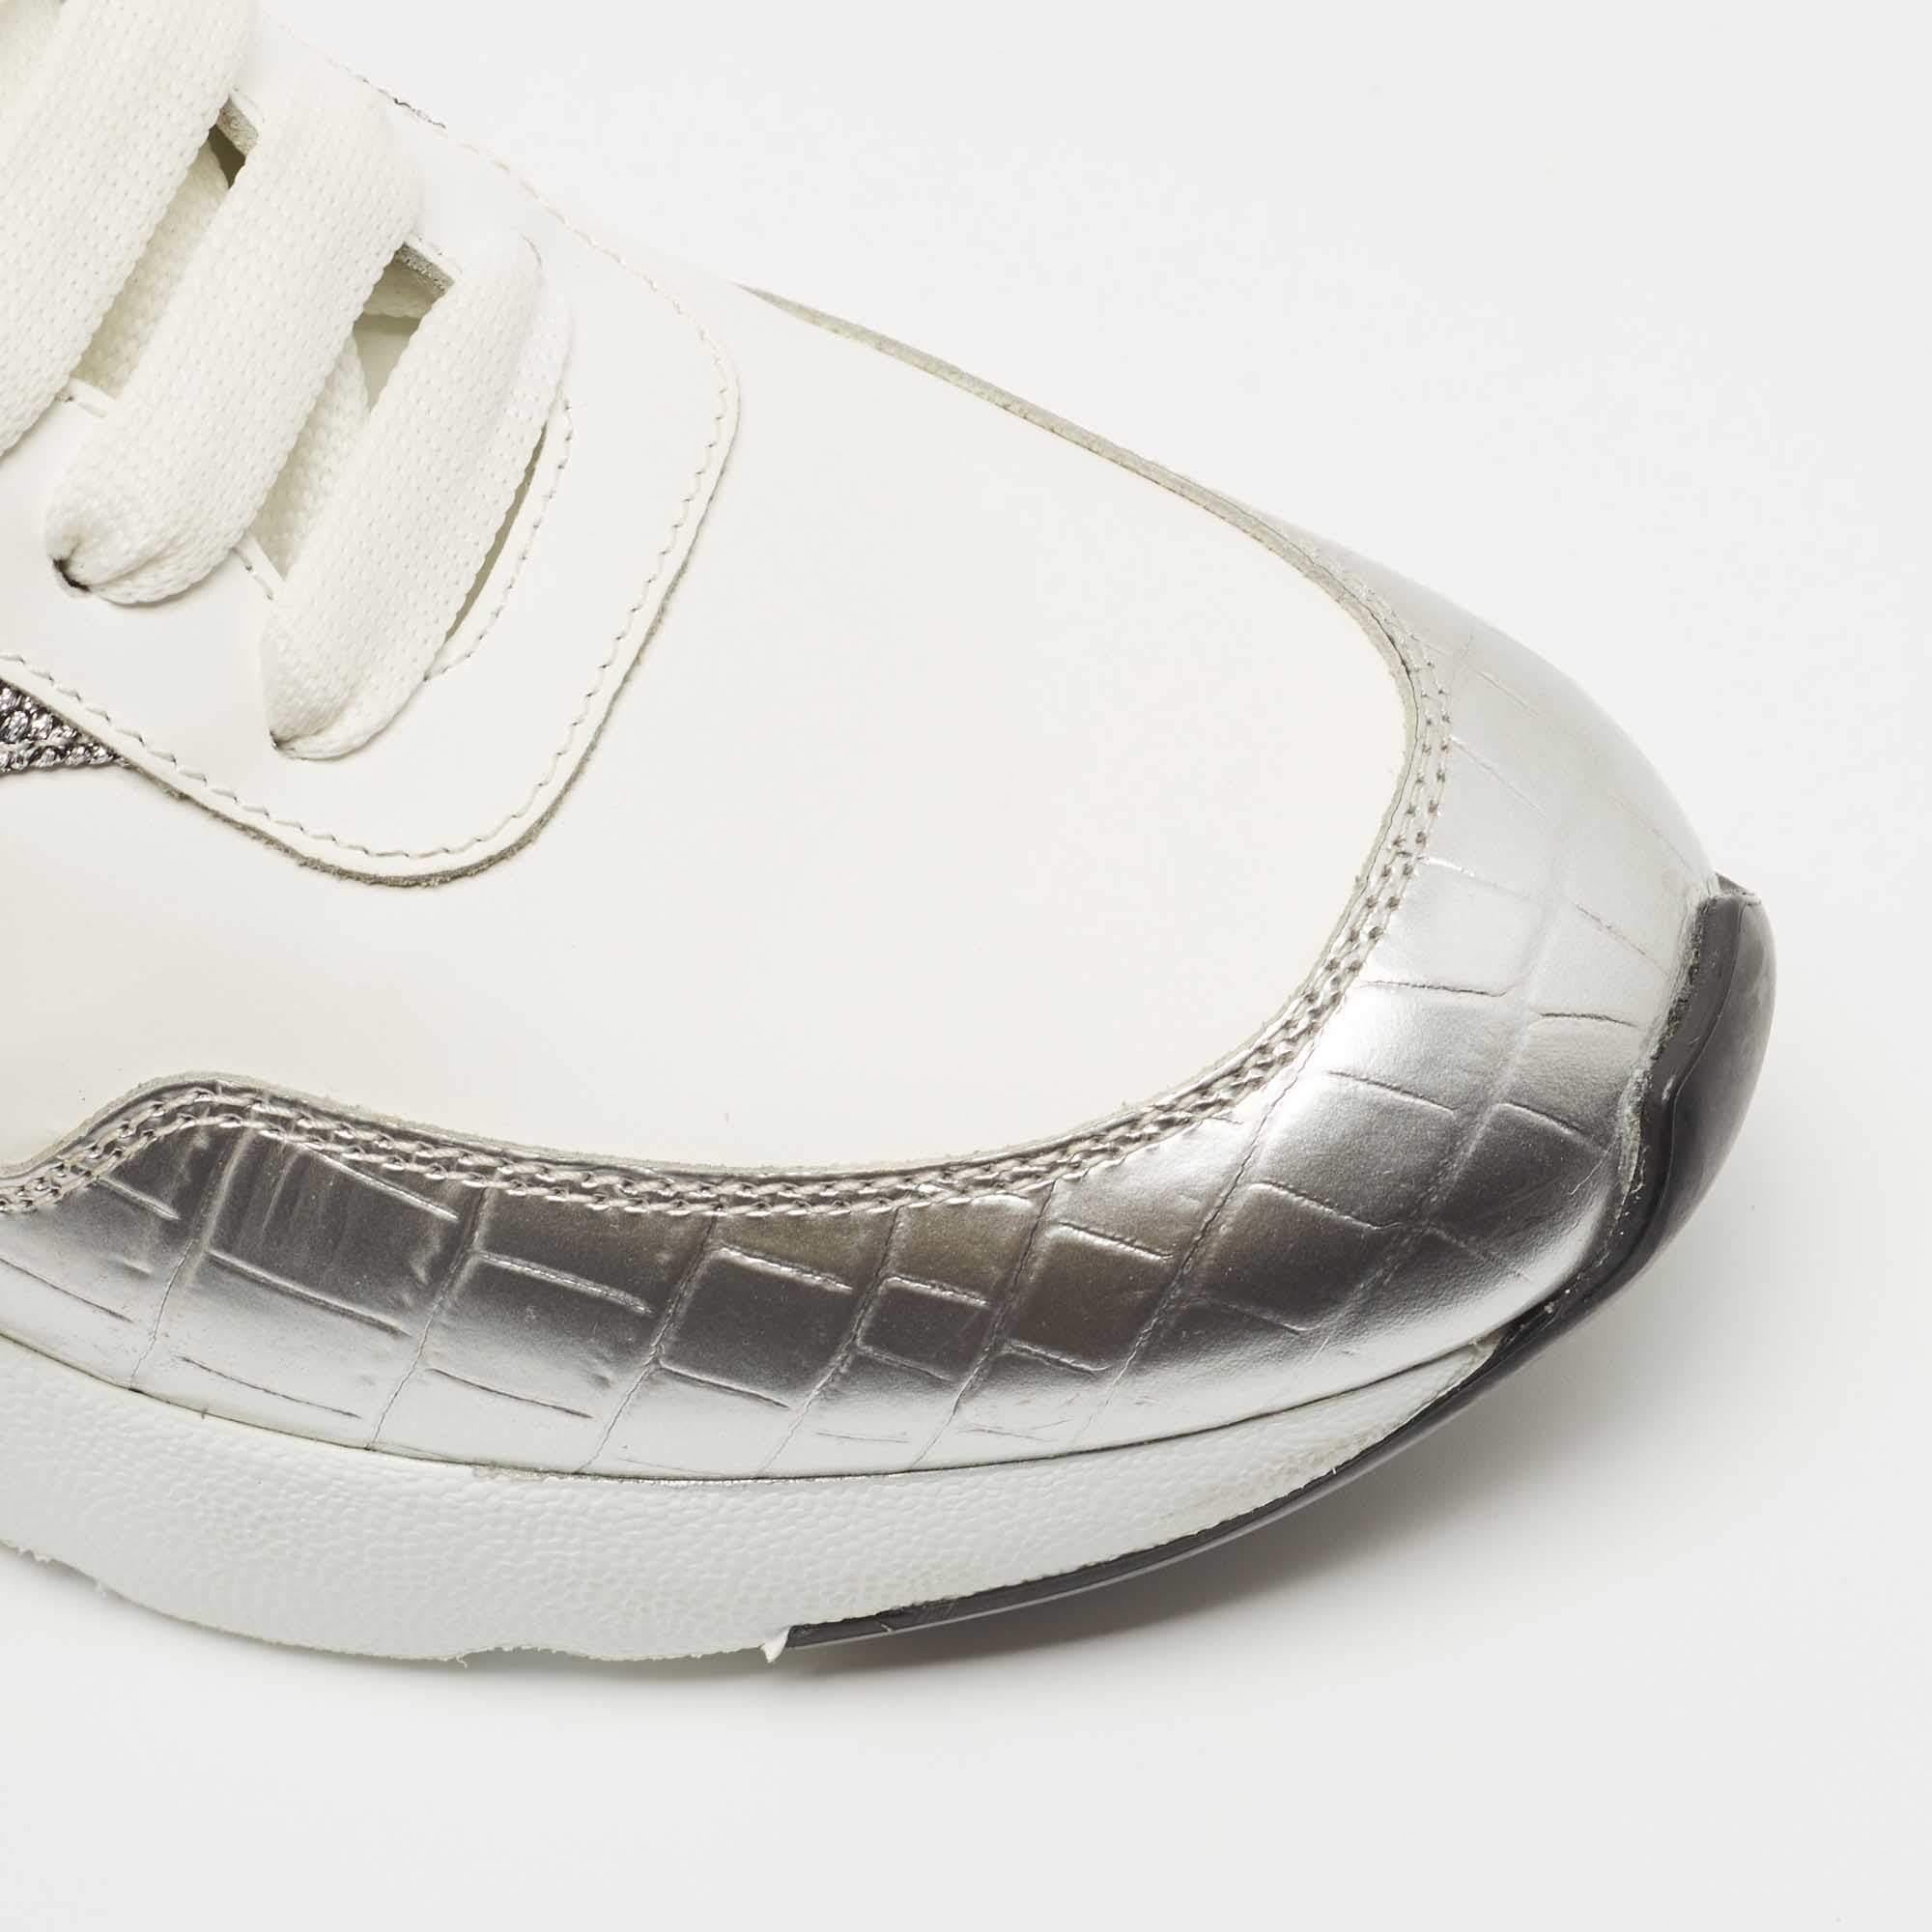 Alexander McQueen Croc Embossed Leather Oversized Low Top Sneakers Size 40.5 3